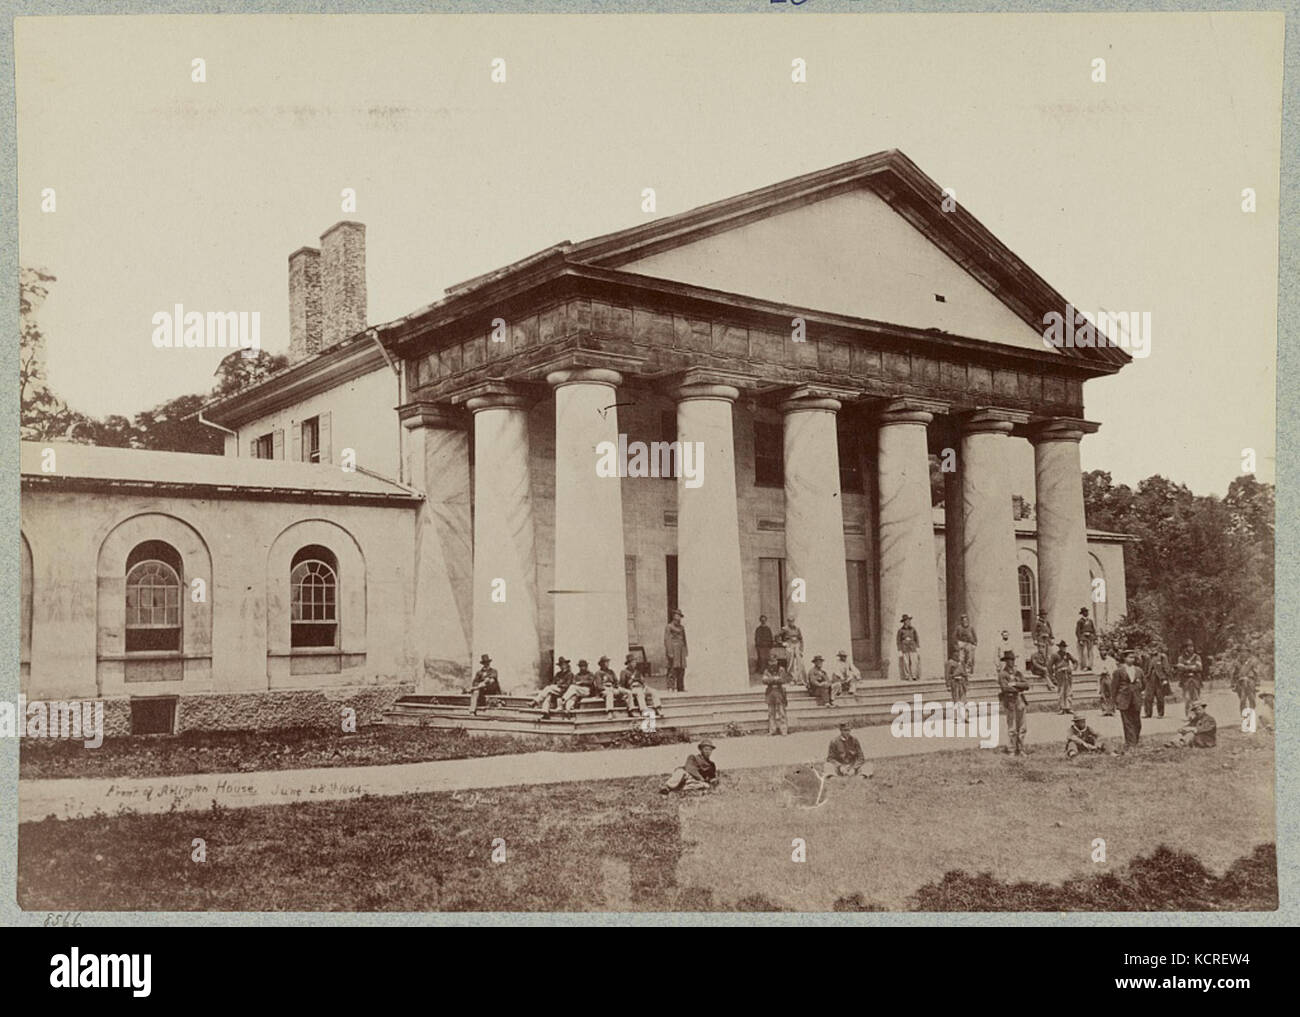 Arlington House, Va., June 28, 1864 34815v Stock Photo